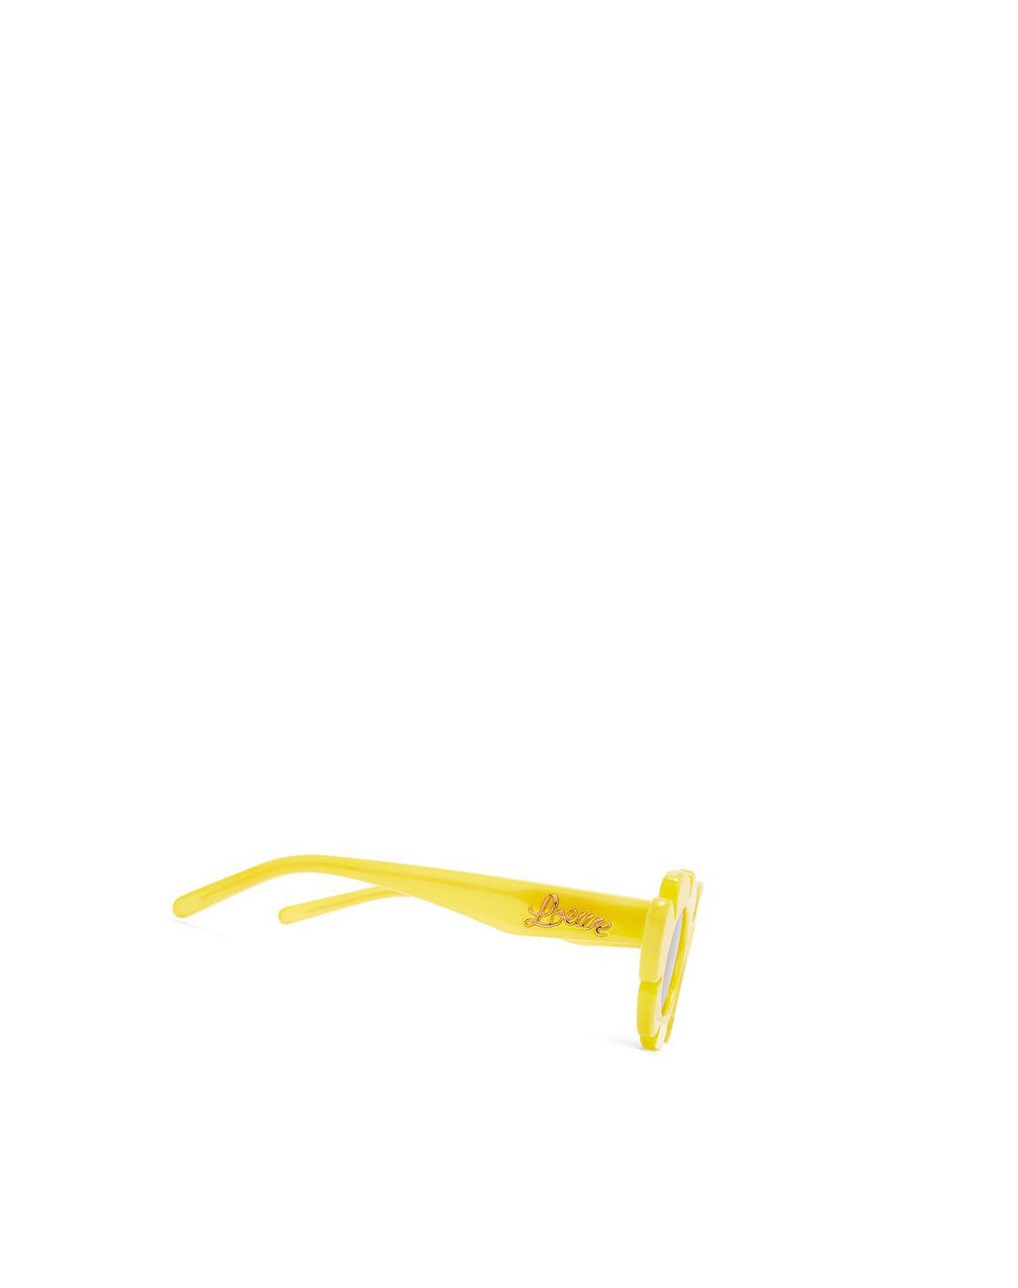 Loewe Flower sunglasses in injected nylon Jaune | 5843QTYFZ